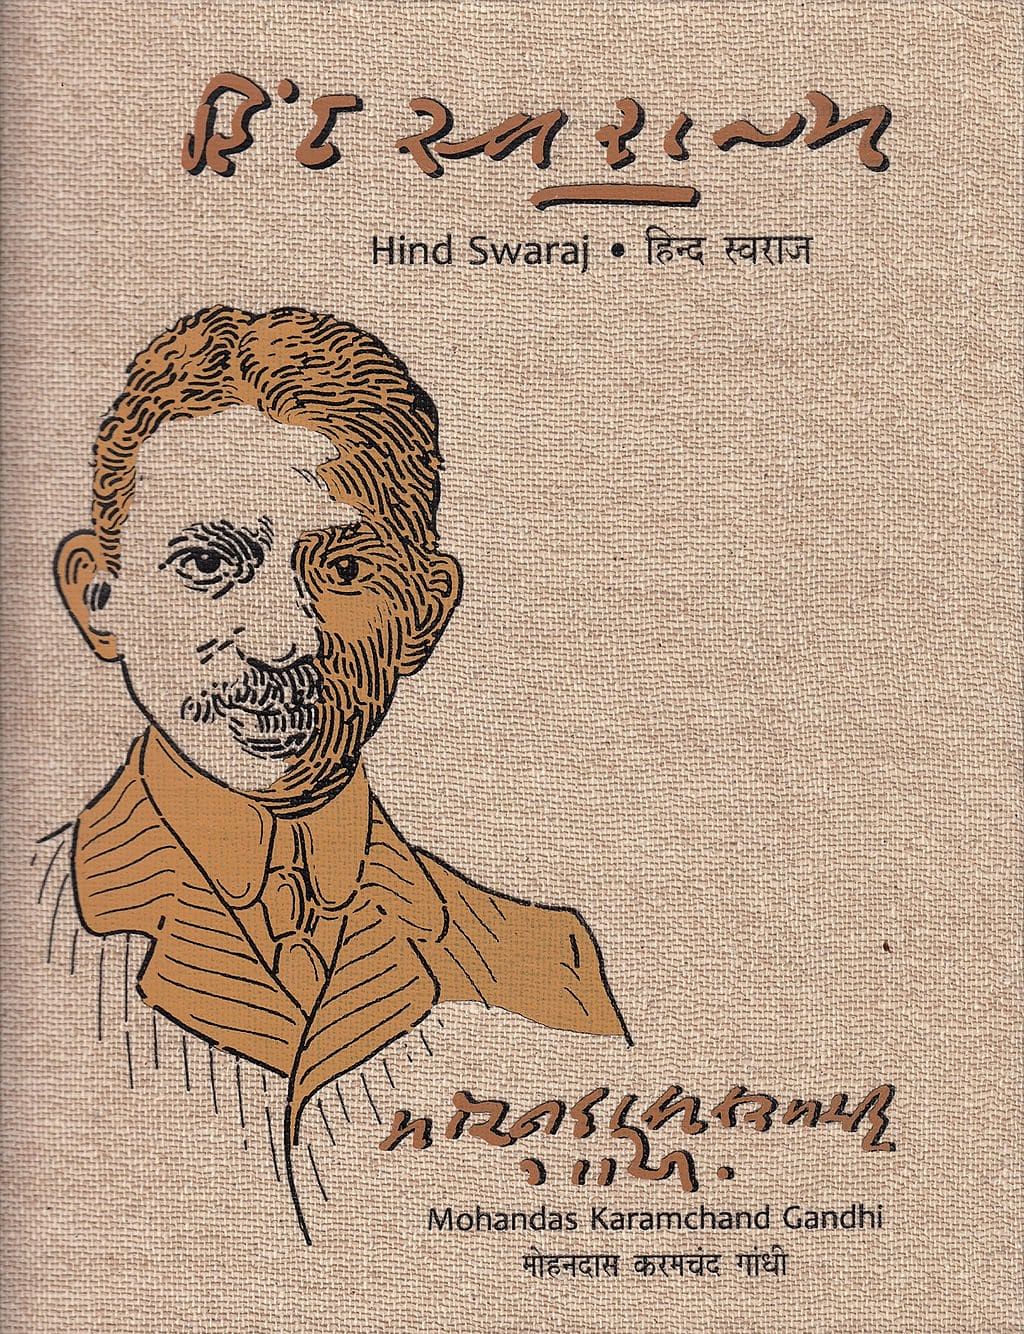 Hind Swaraj by M.K.Gandhi